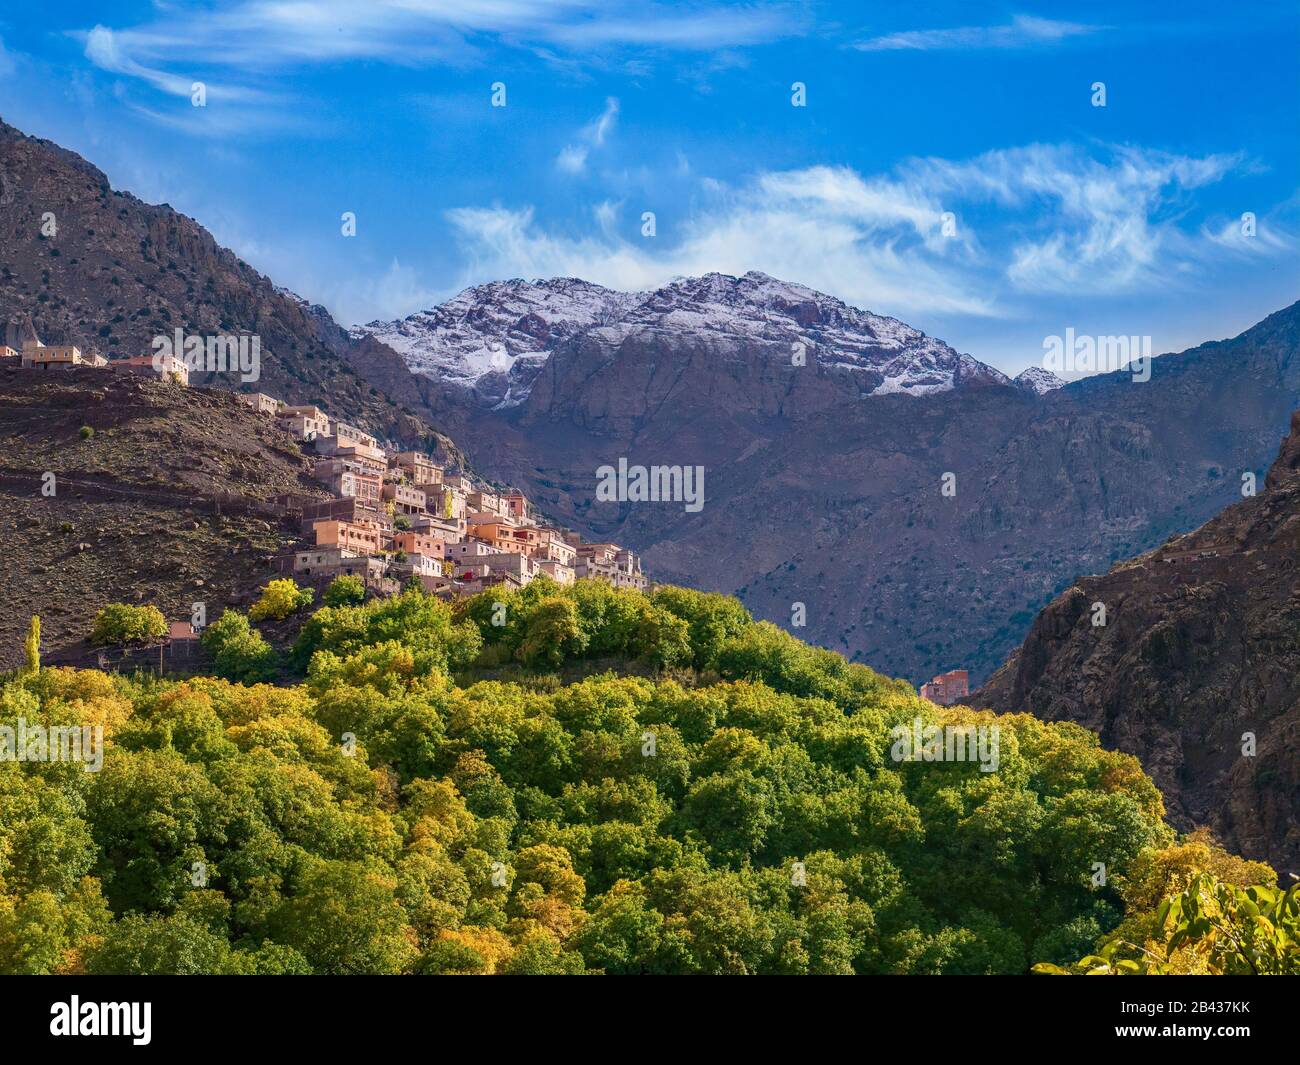 Il villaggio berbero di Aroumd, sulle montagne dell'alto Atlante del Marocco, con le cime innevate del Jbel Toubkal, la montagna più alta del Nord Africa sul retro. Foto Stock